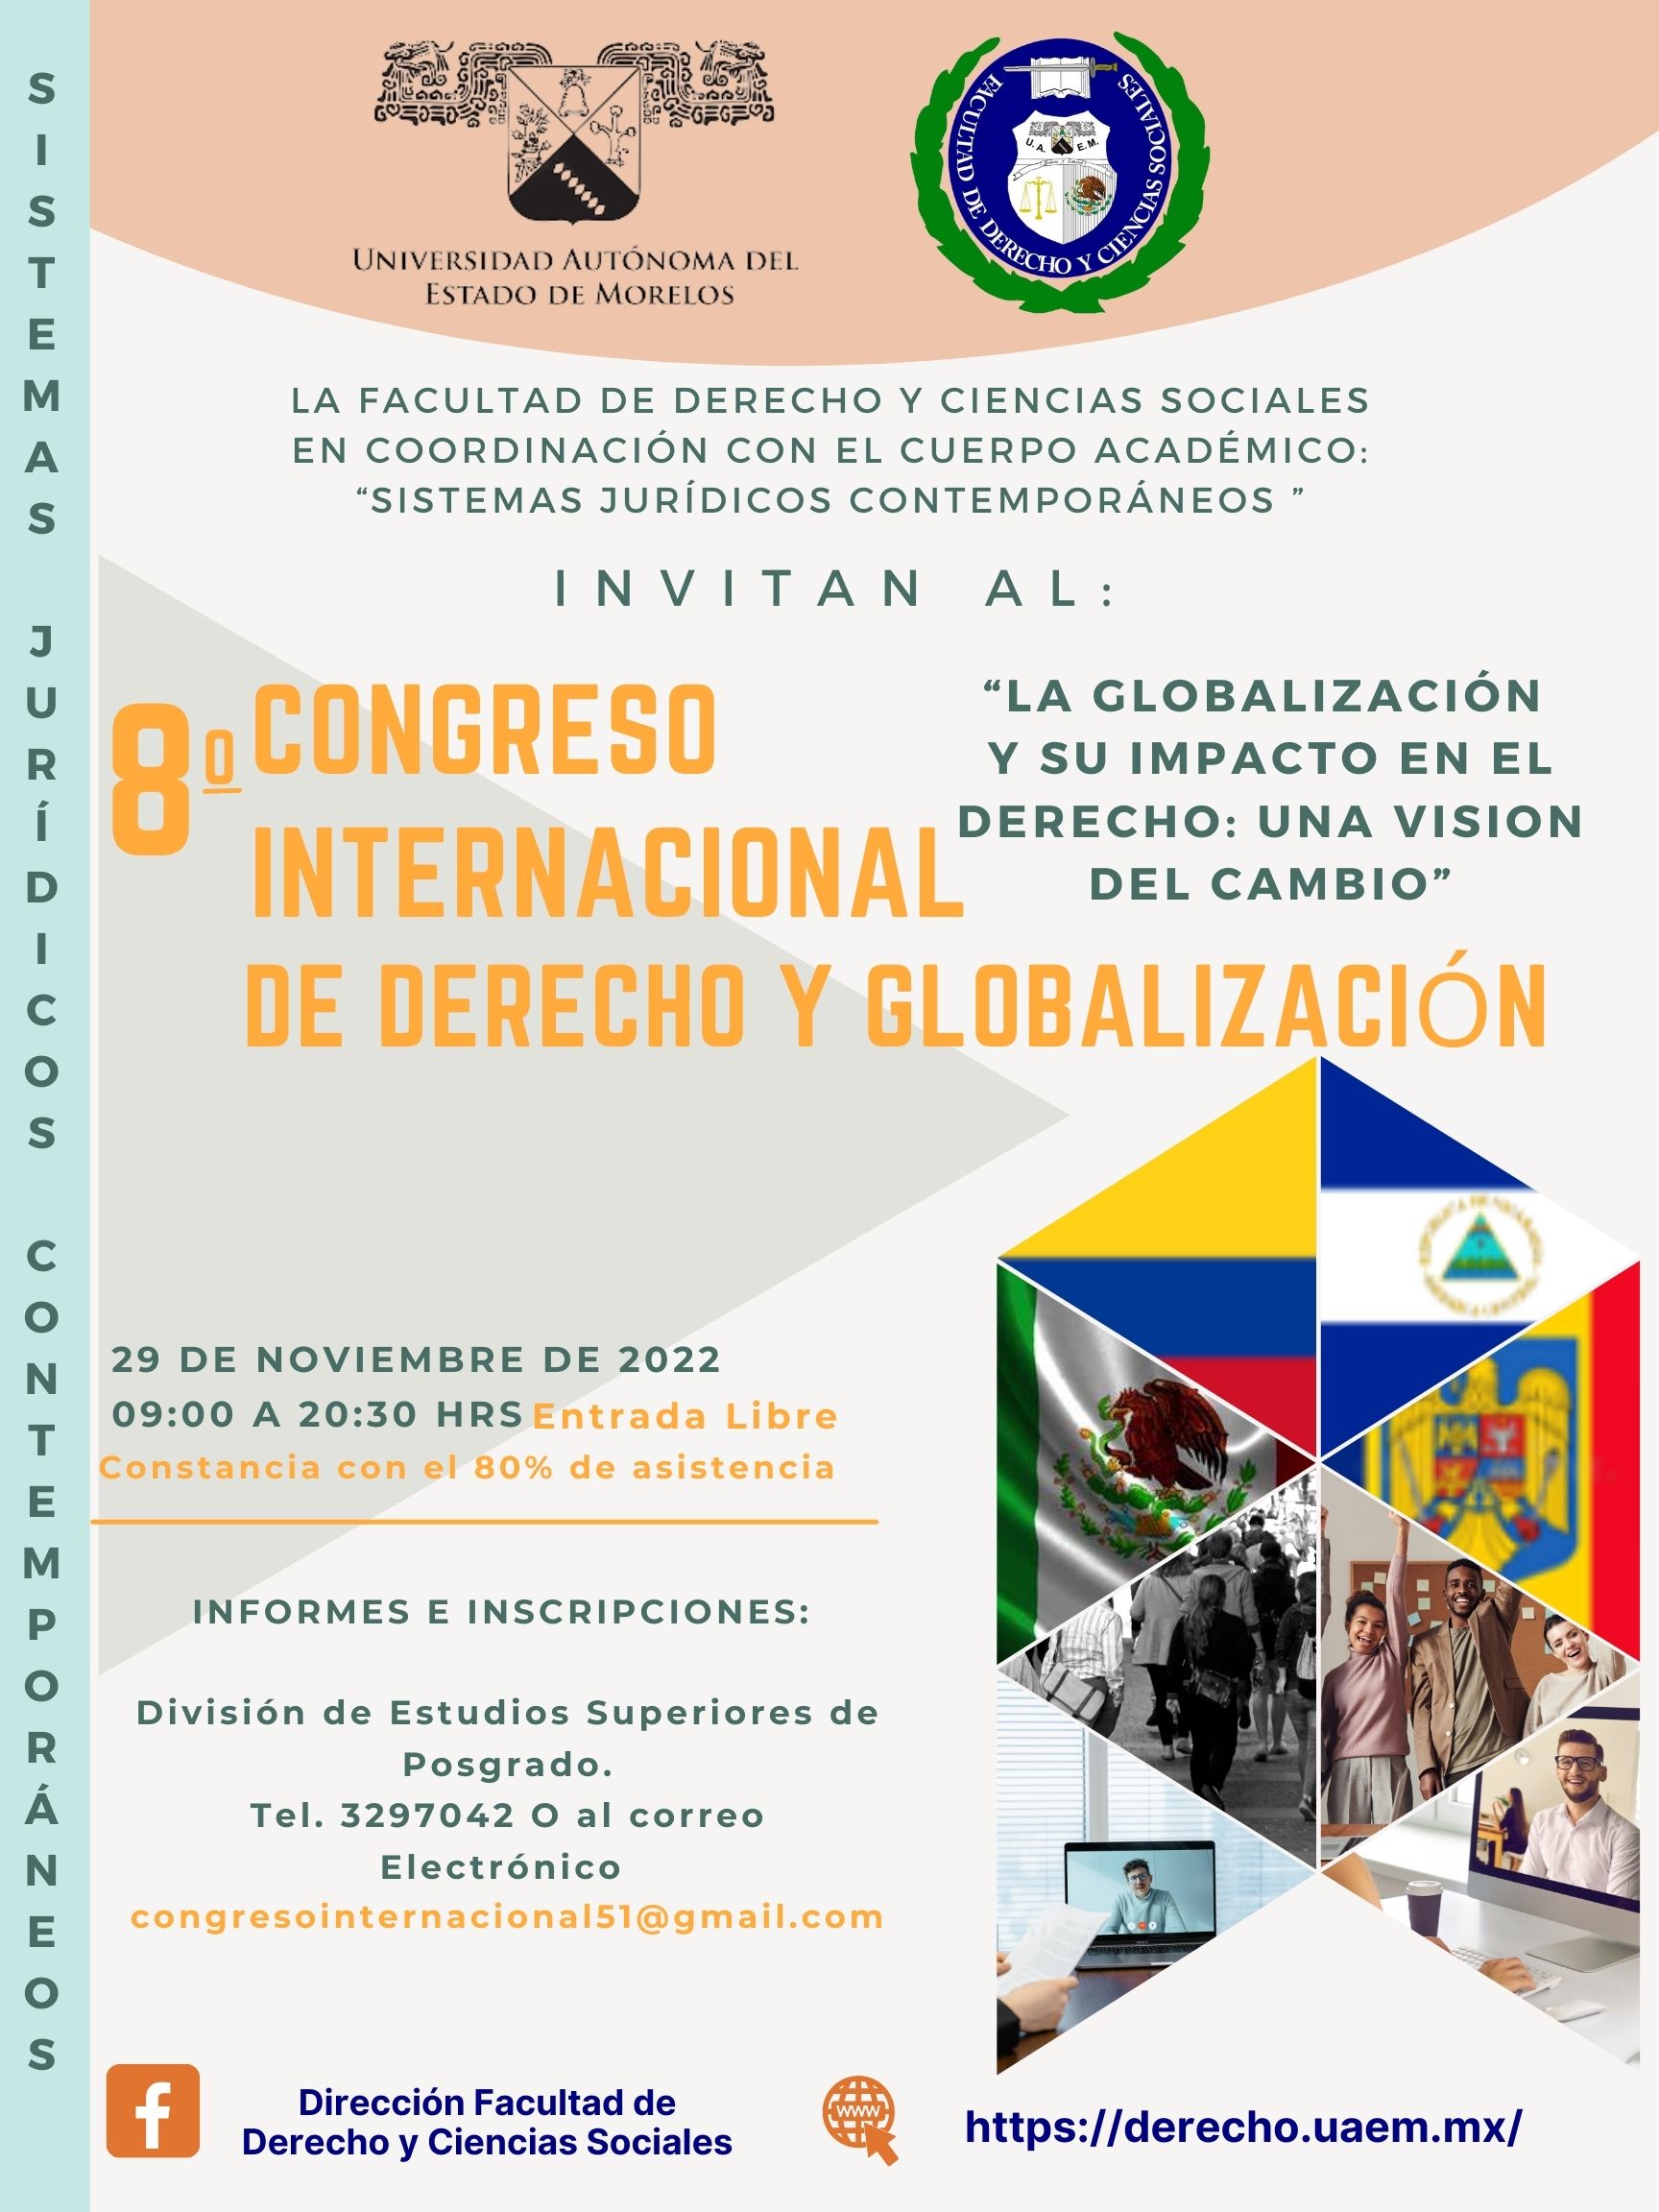 8º Congreso “La Globalización y su impacto en el Derecho: Una visión Internacional del cambio”